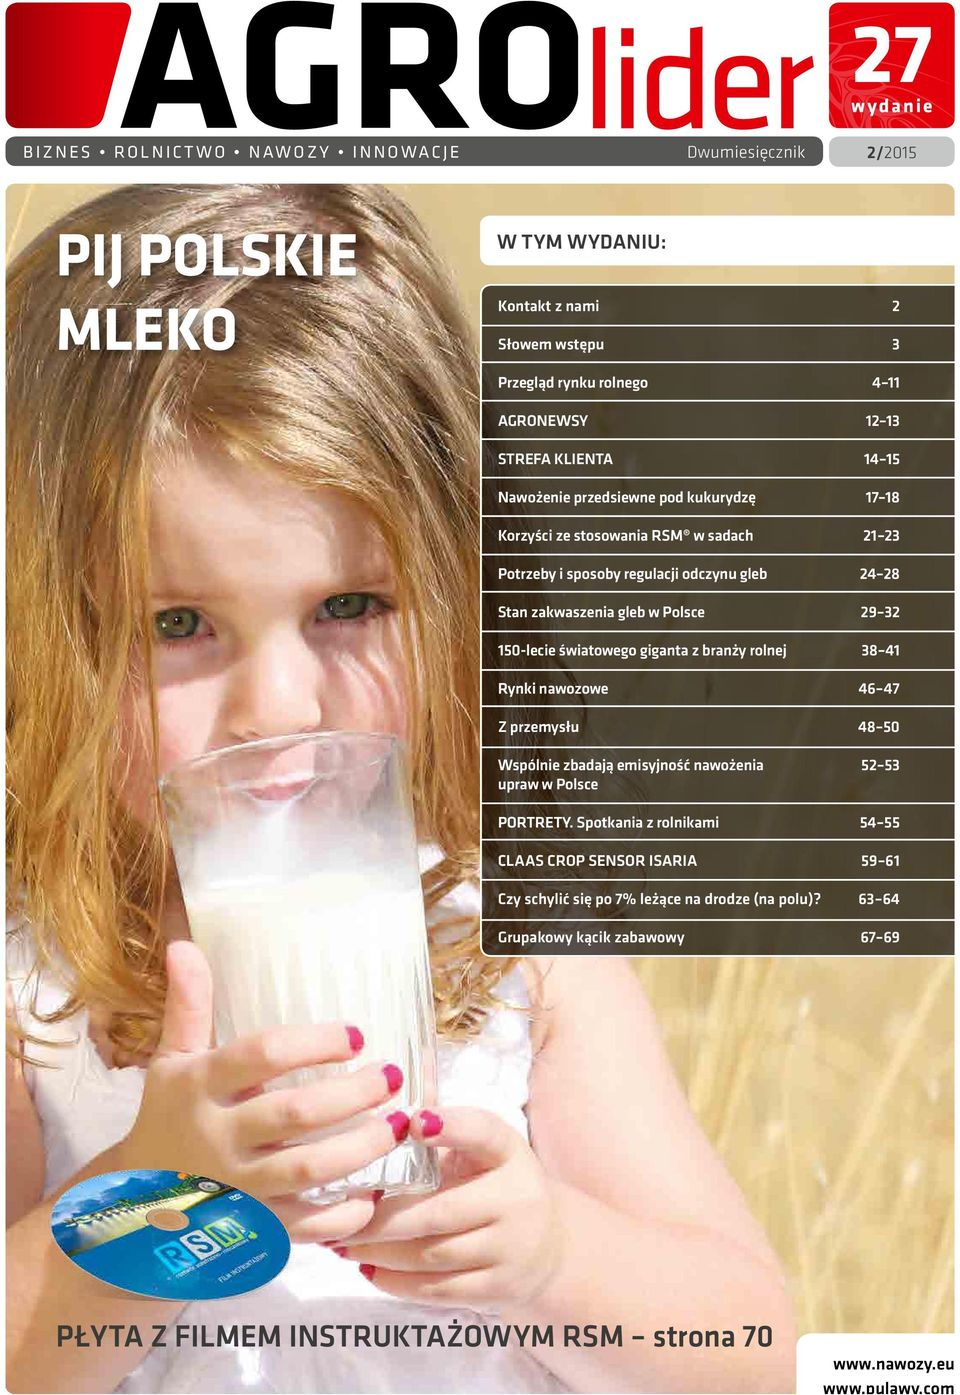 światowego giganta z branży rolnej 38 41 Rynki nawozowe 46 47 Z przemysłu 48 50 Wspólnie zbadają emisyjność nawożenia 52 53 upraw w Polsce PORTRETY.